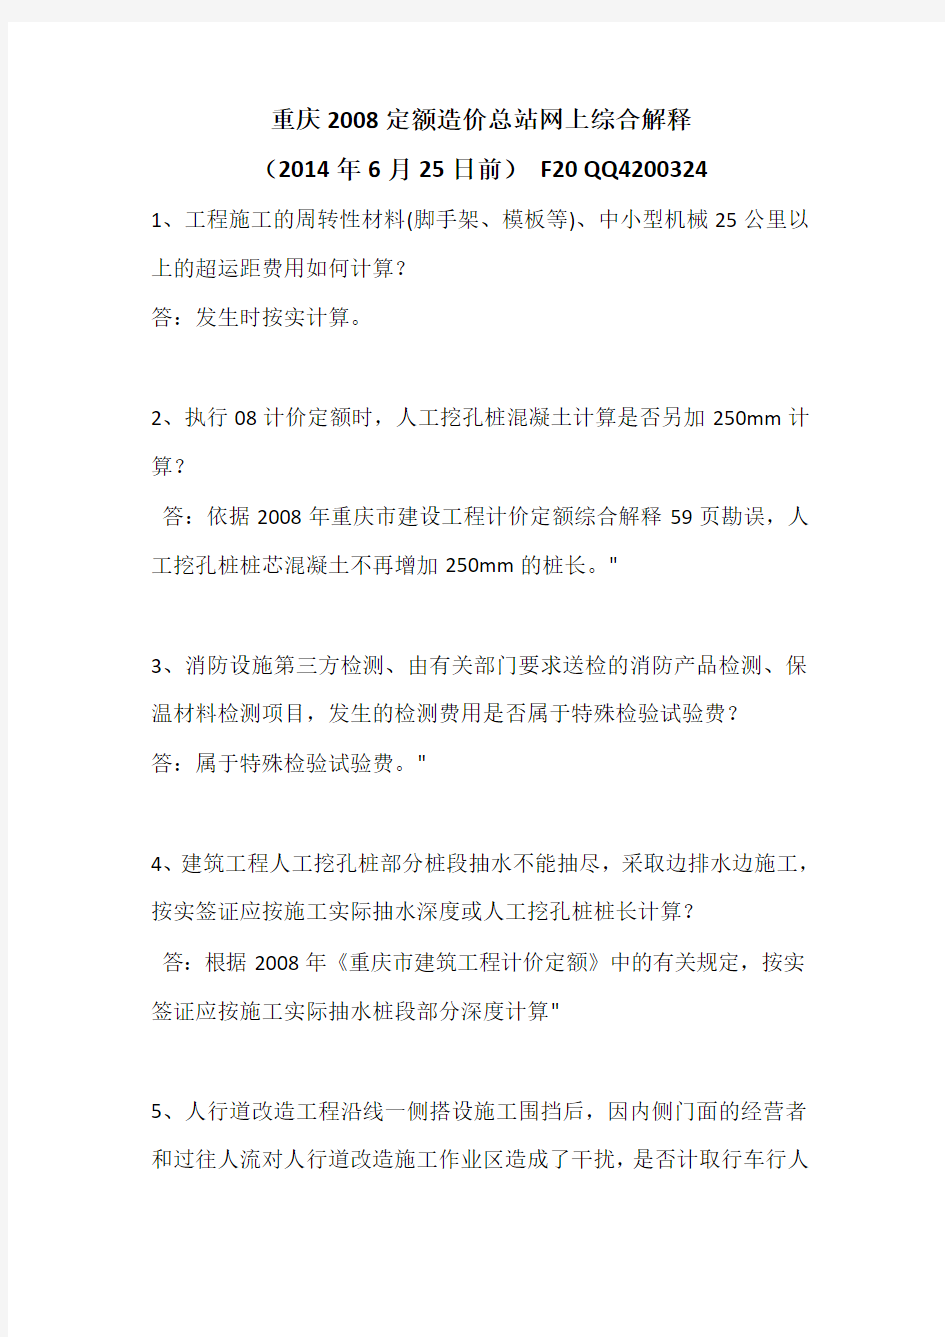 重庆08定额造价站综合解释(2014.06.25)